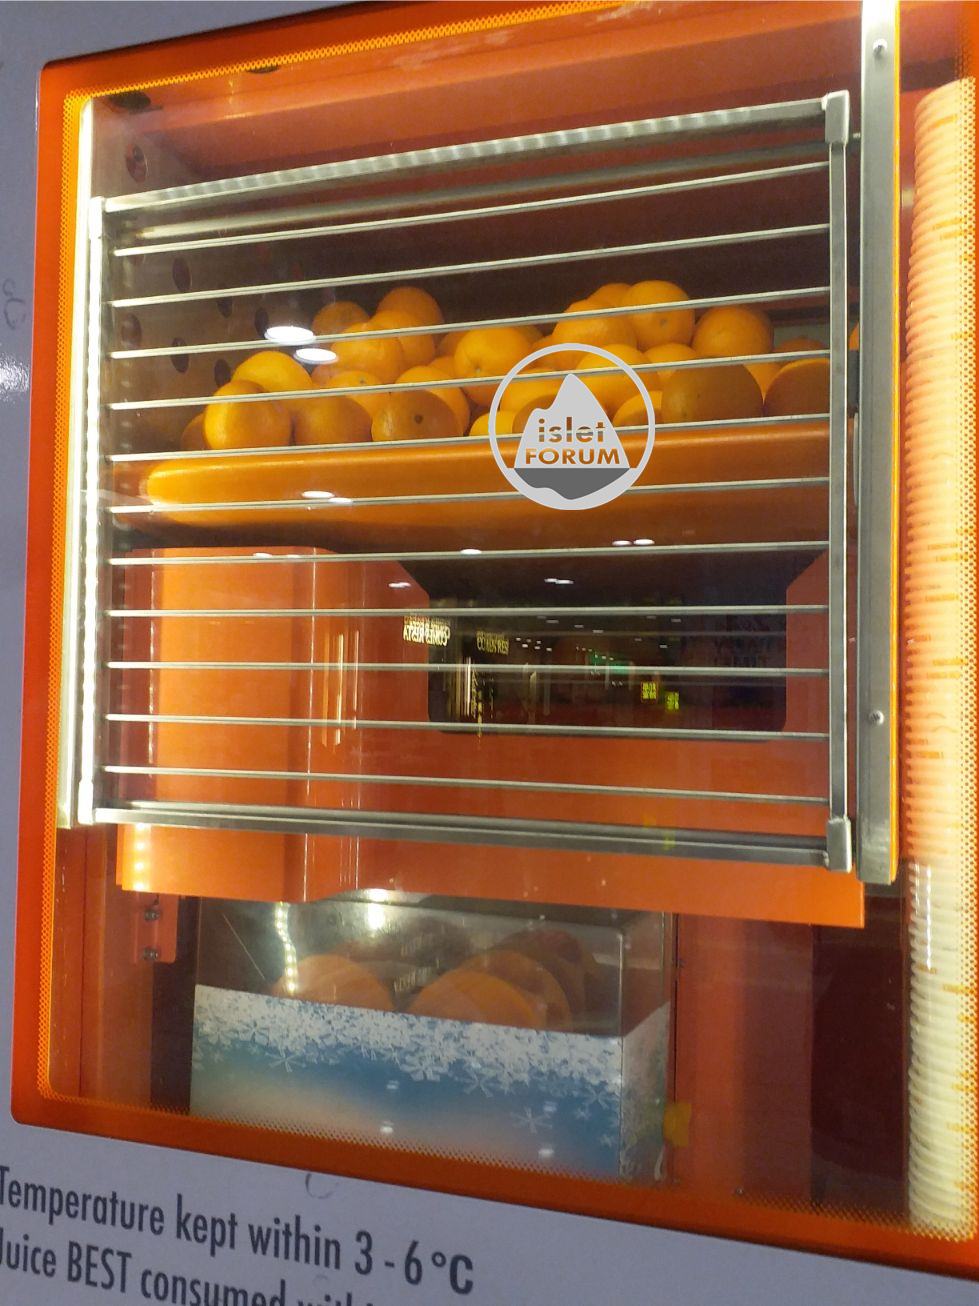 IJOOZ Vending Machine 鮮橙汁售賣機 (3).jpg